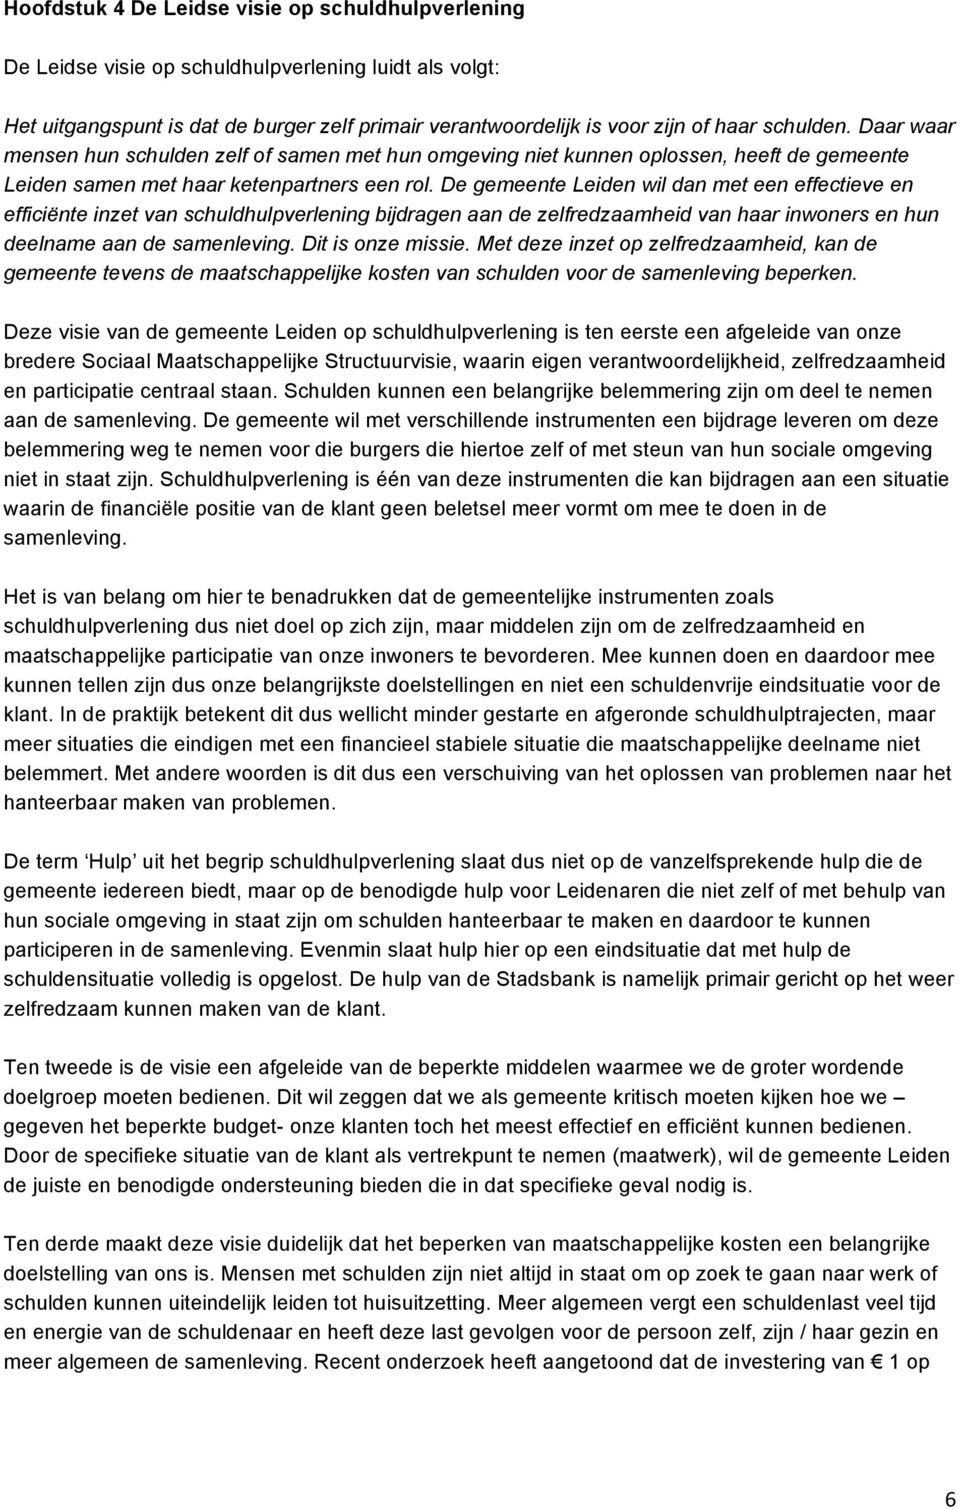 De gemeente Leiden wil dan met een effectieve en efficiënte inzet van schuldhulpverlening bijdragen aan de zelfredzaamheid van haar inwoners en hun deelname aan de samenleving. Dit is onze missie.